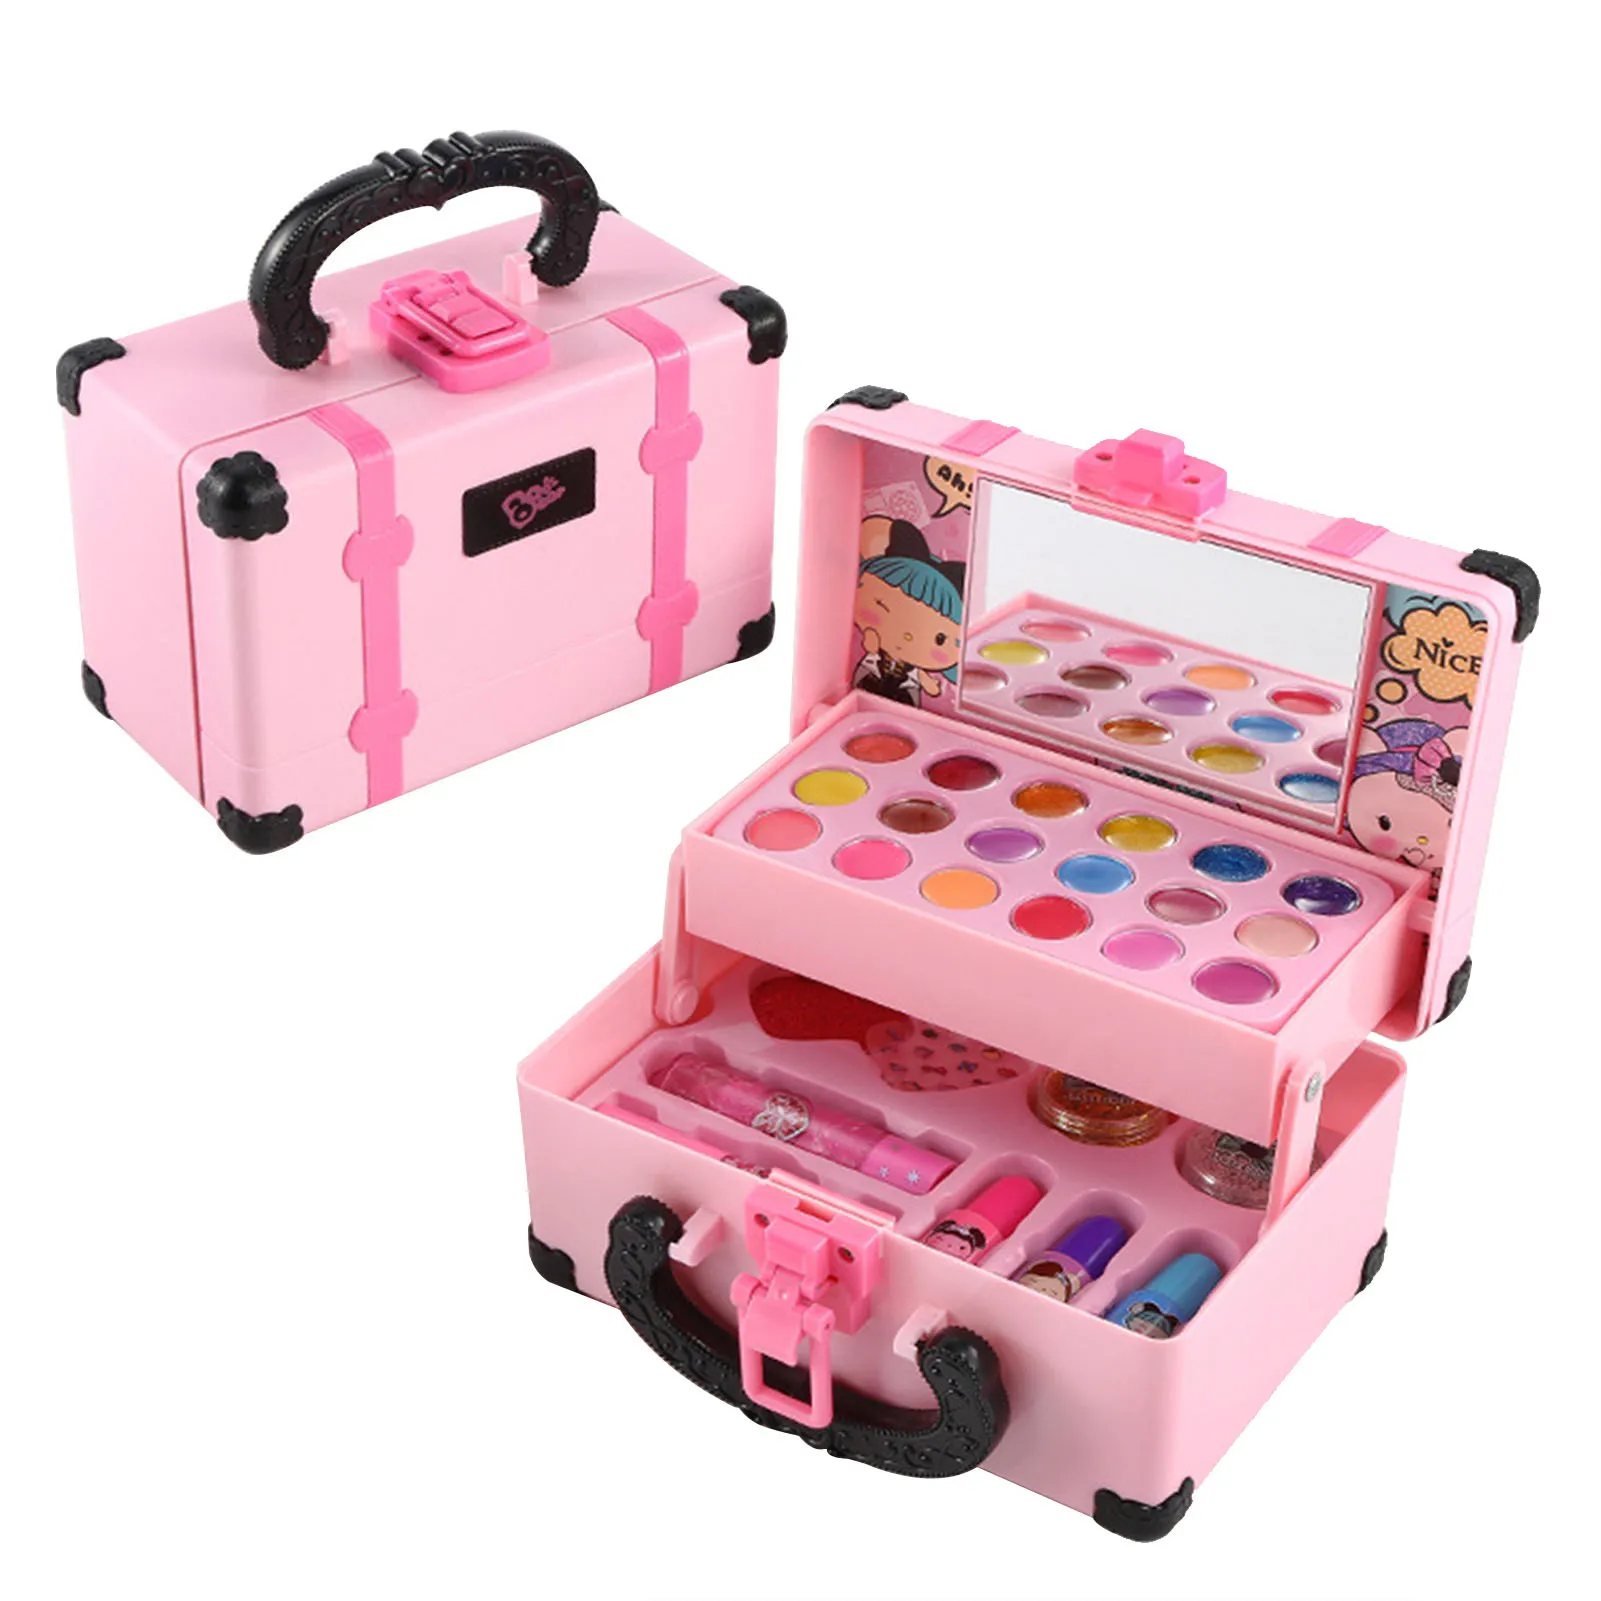 Kit de maquillaje de 30 piezas para niños y niñas, juego de maquillaje lavable, juguete cosmético con estuche de transporte, regalo de cumpleaños para niñas de 4 a 8 años